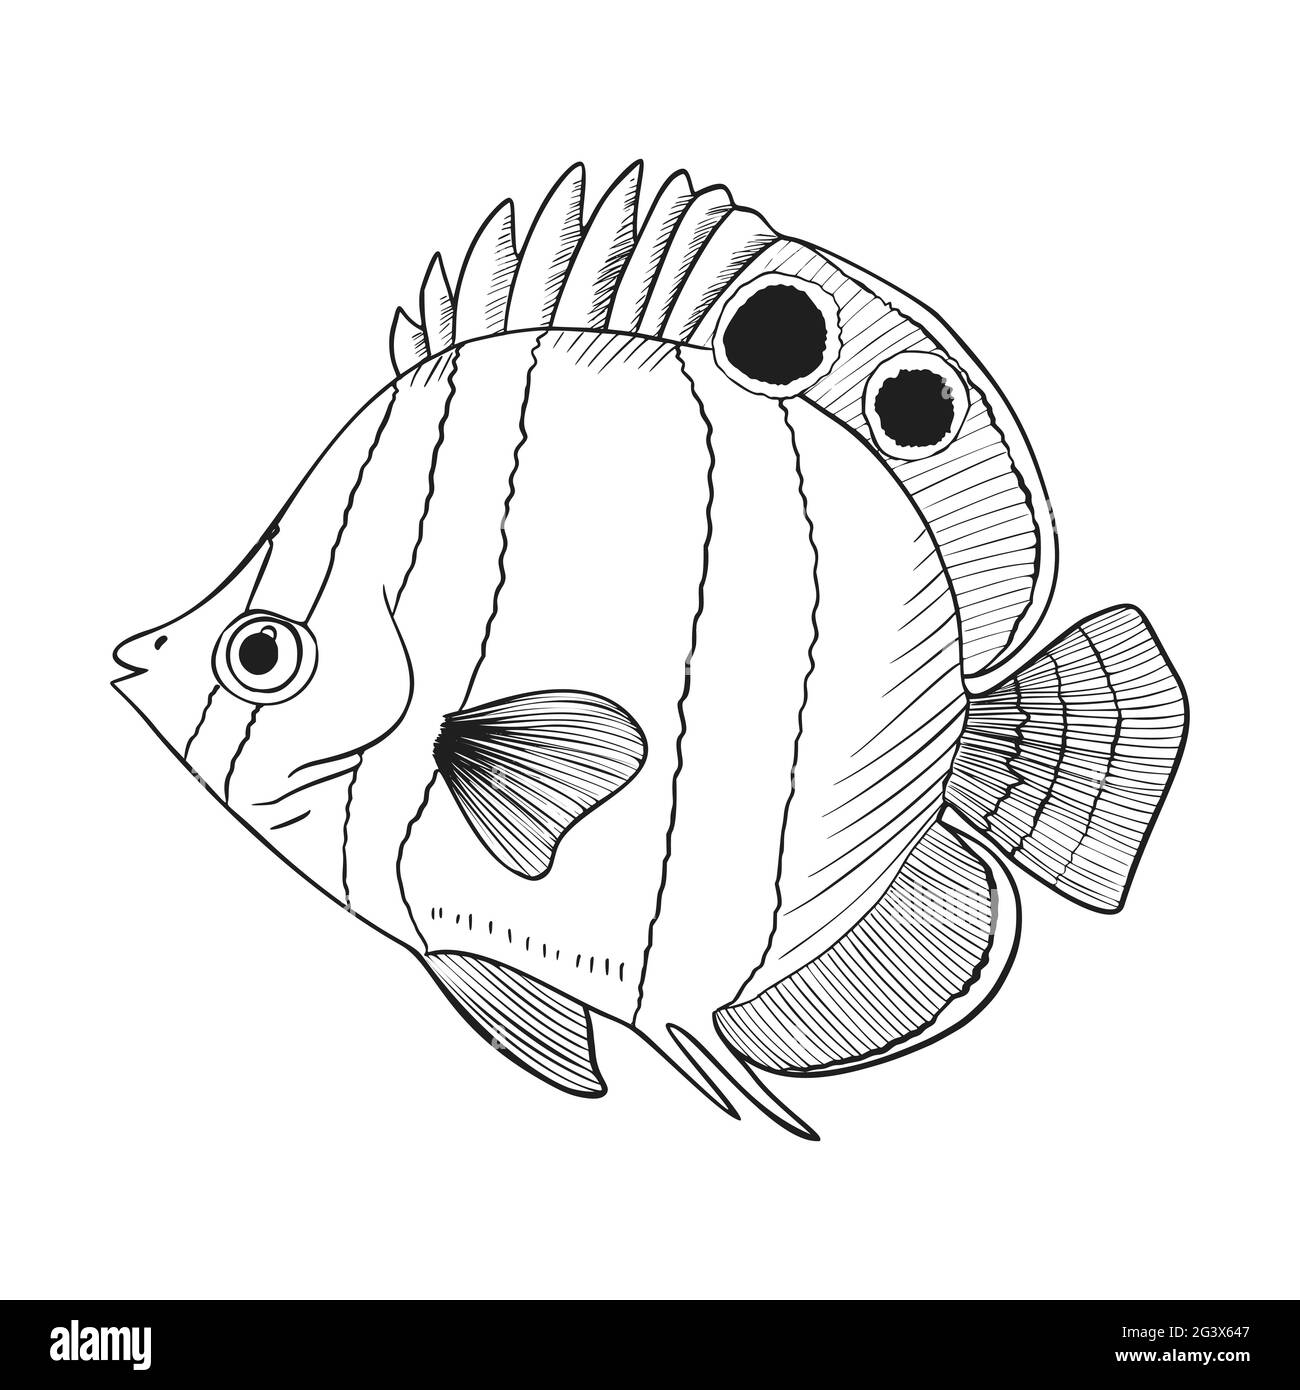 Skizze Für Rifffische Vektorgrafik. Handgezeichnetes Unterwasser-Tierset. Realistische Naturelemente für Fischgeschäft, Meeresfrüchte-Design. Vektor illustrr Stock Vektor